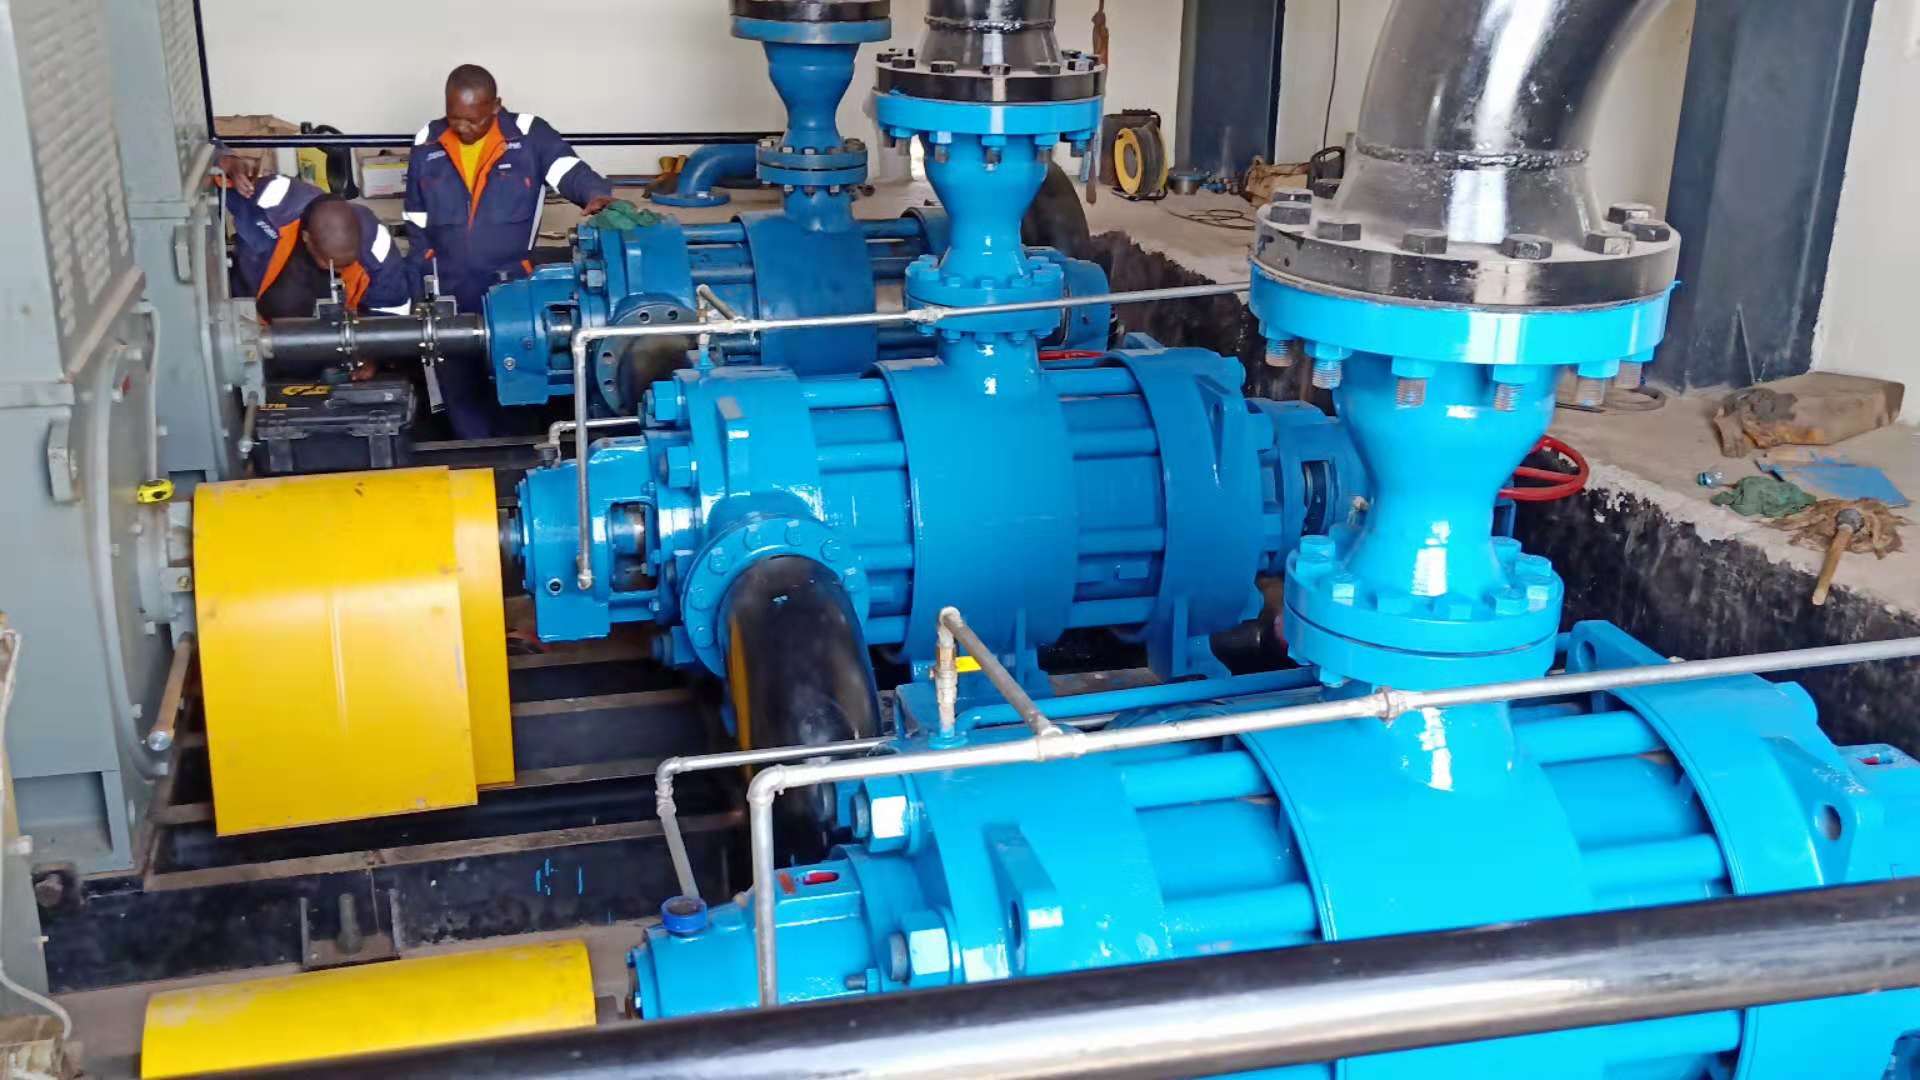 Multistage pump project at Lake Baringo, Nairobi, Kenya